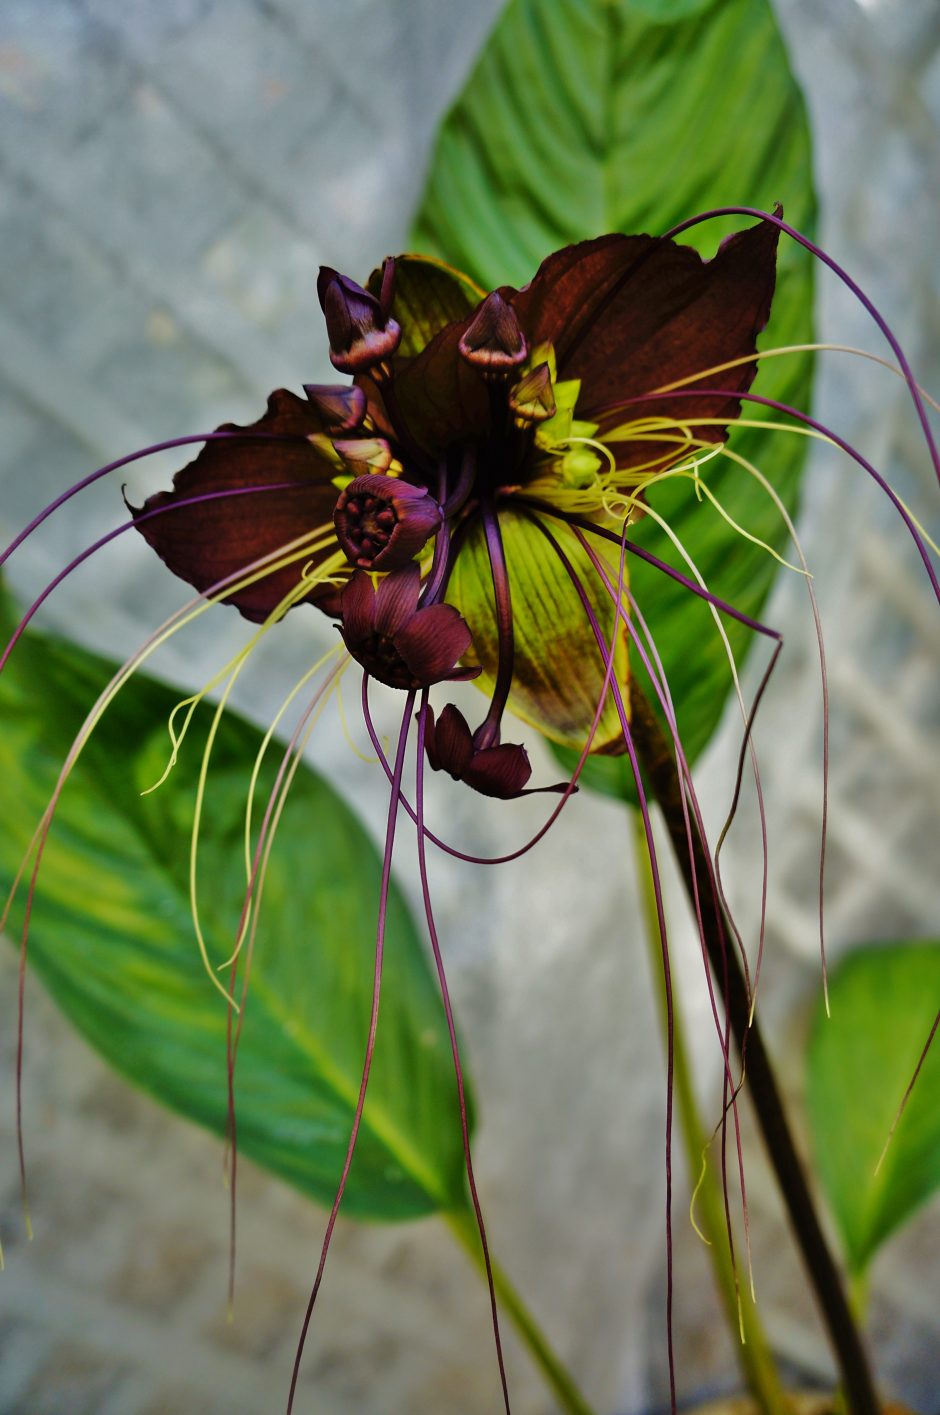 Juodoji lelija iš Drugelių paviljono